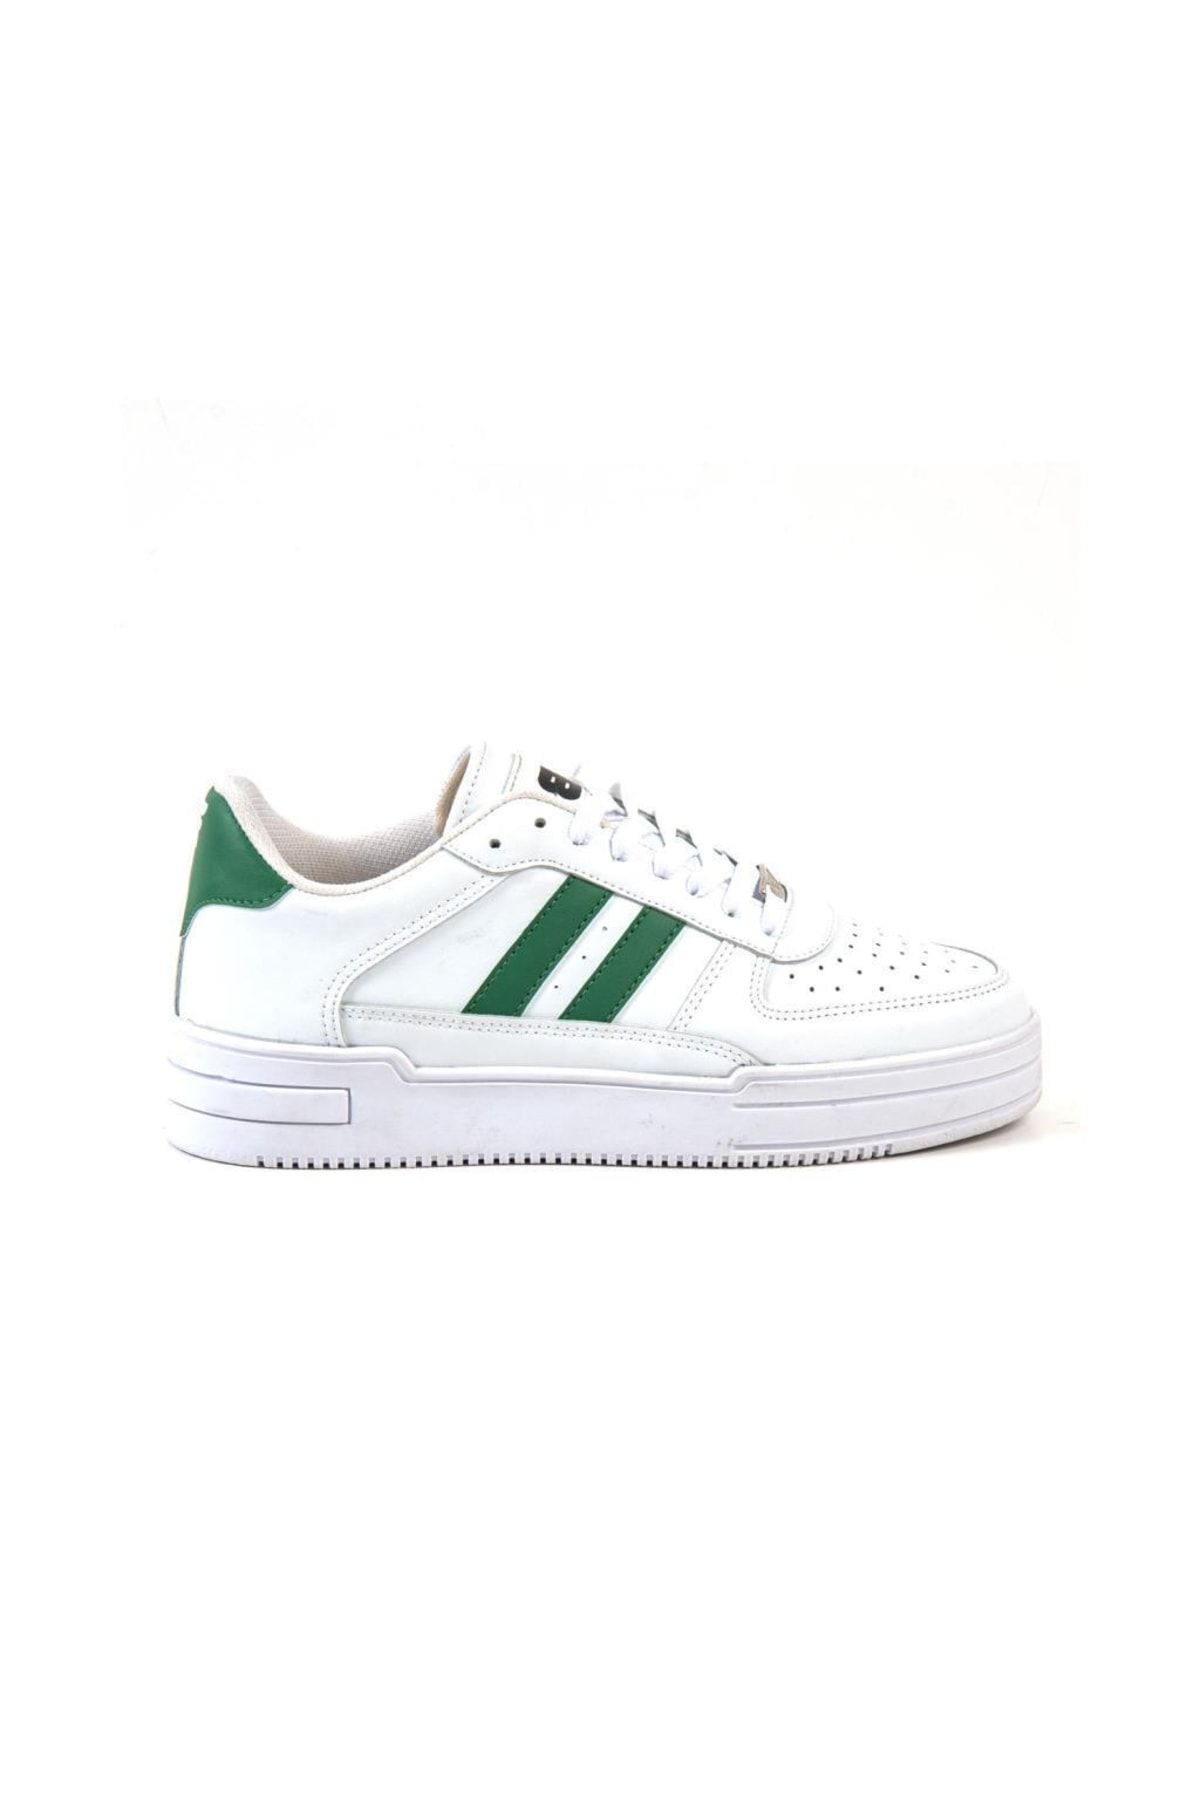 Bulldozer Bul231923 Spor Ayakkabı Beyaz-yeşil